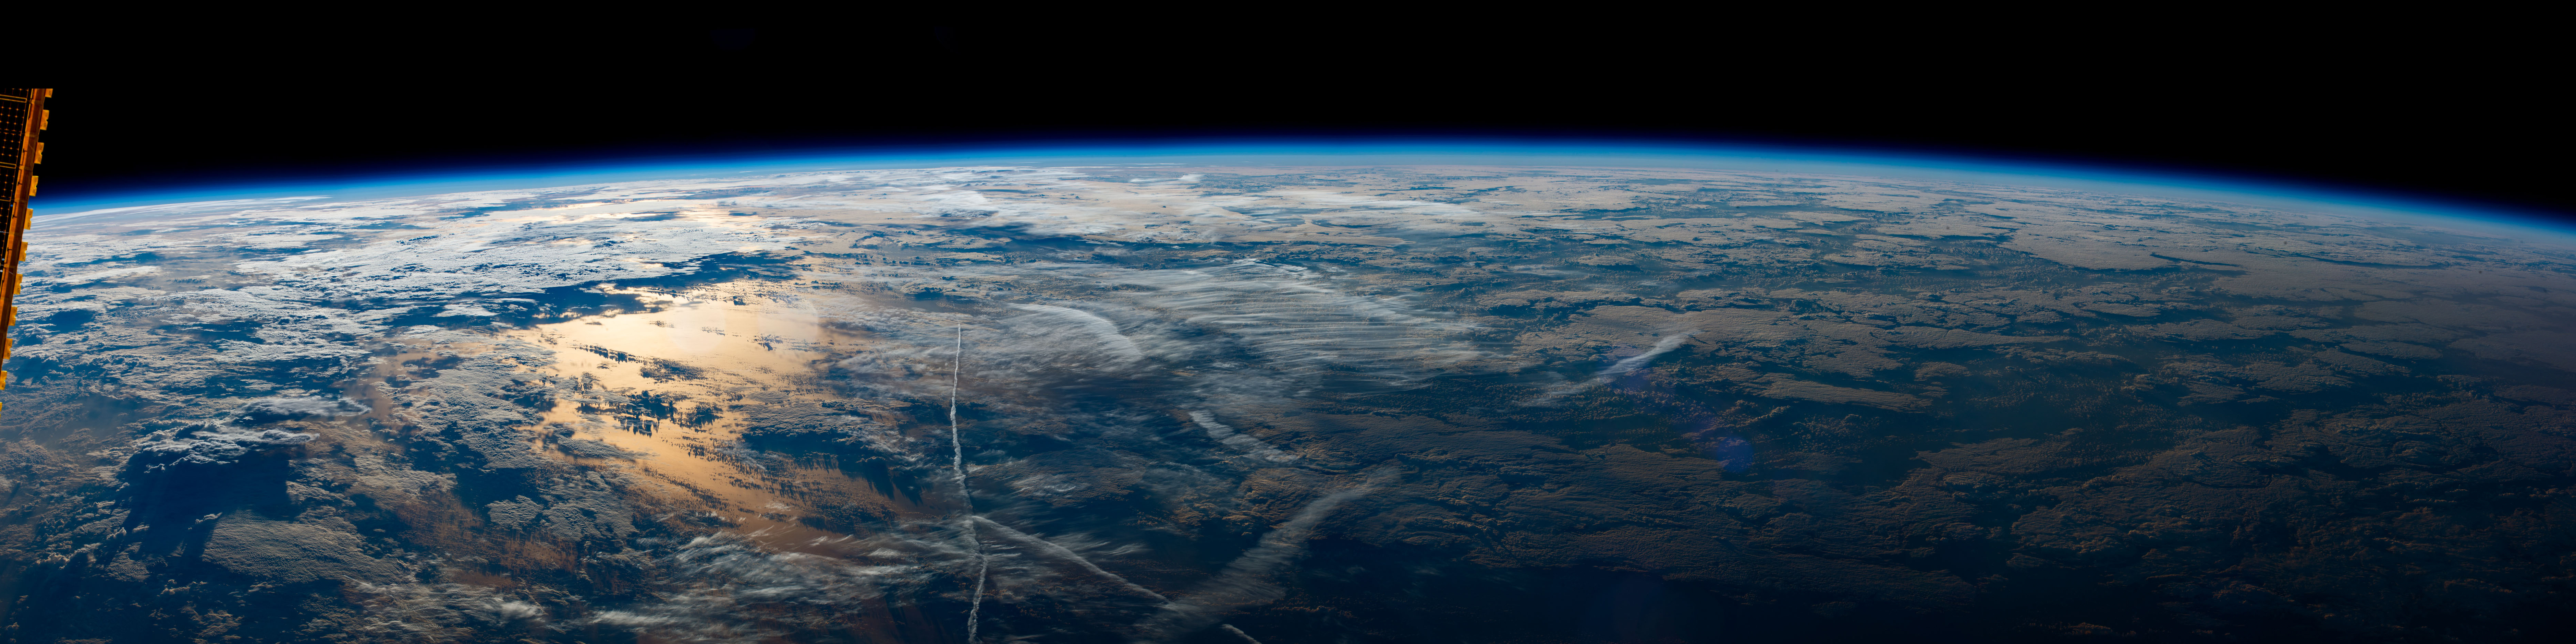 Фото земли из космоса в высоком